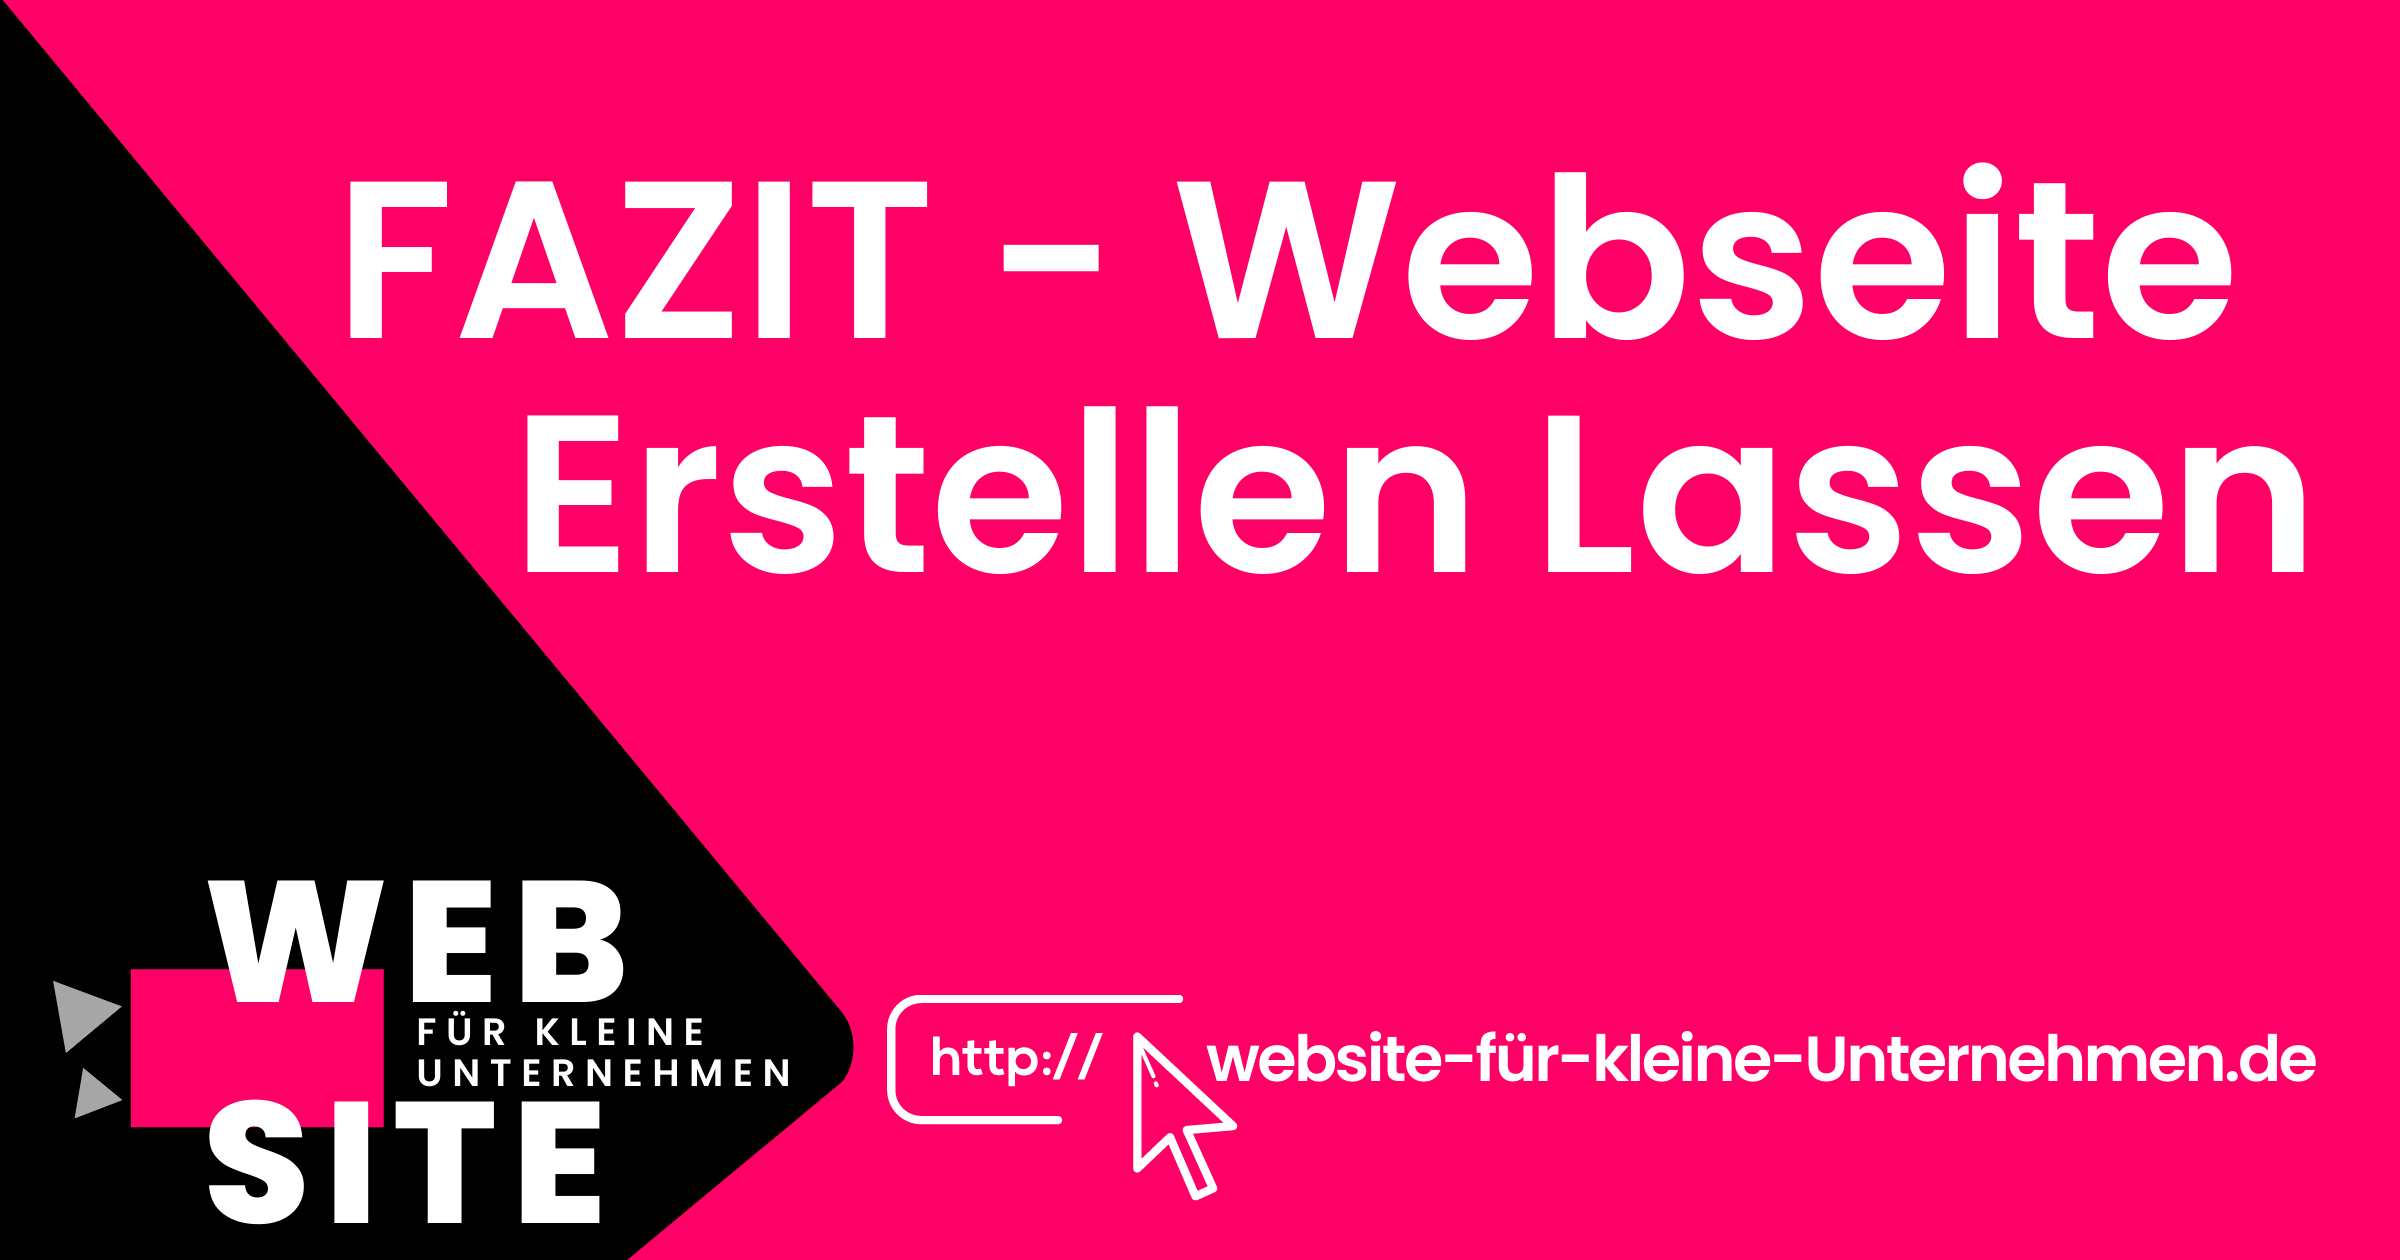 Website kleine Unternehmen - Webseite Erstellen Lassen - Fazit